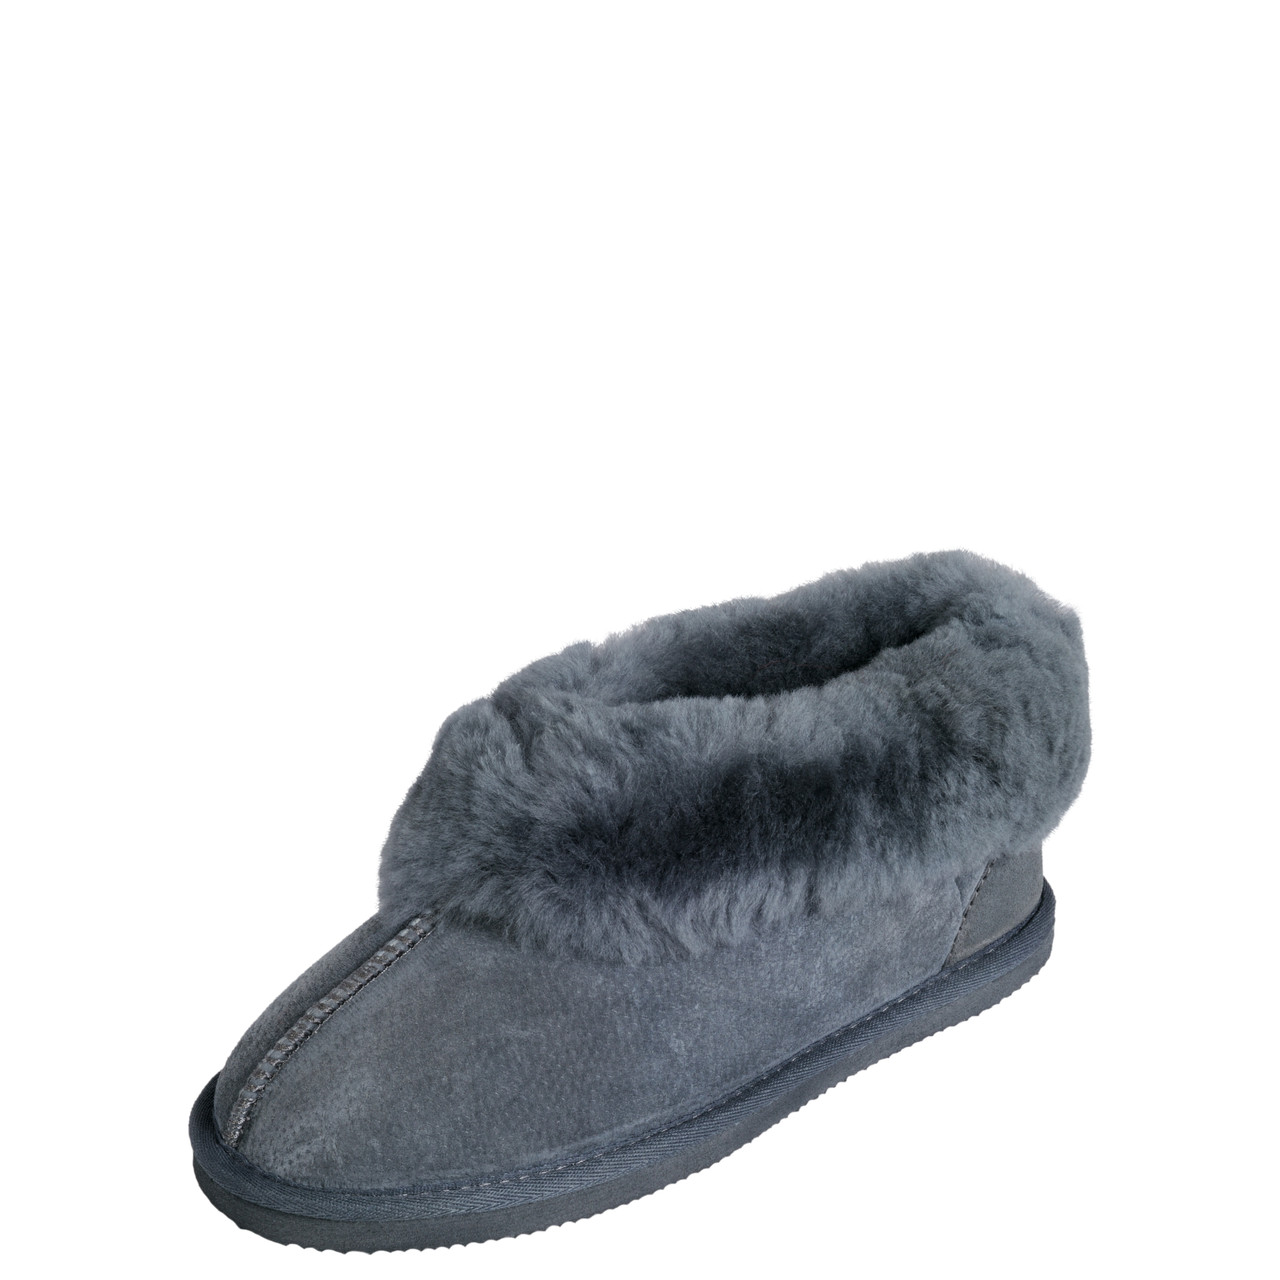 Comfy W Sage Slippers by Ziera | Shop Online at Ziera NZ